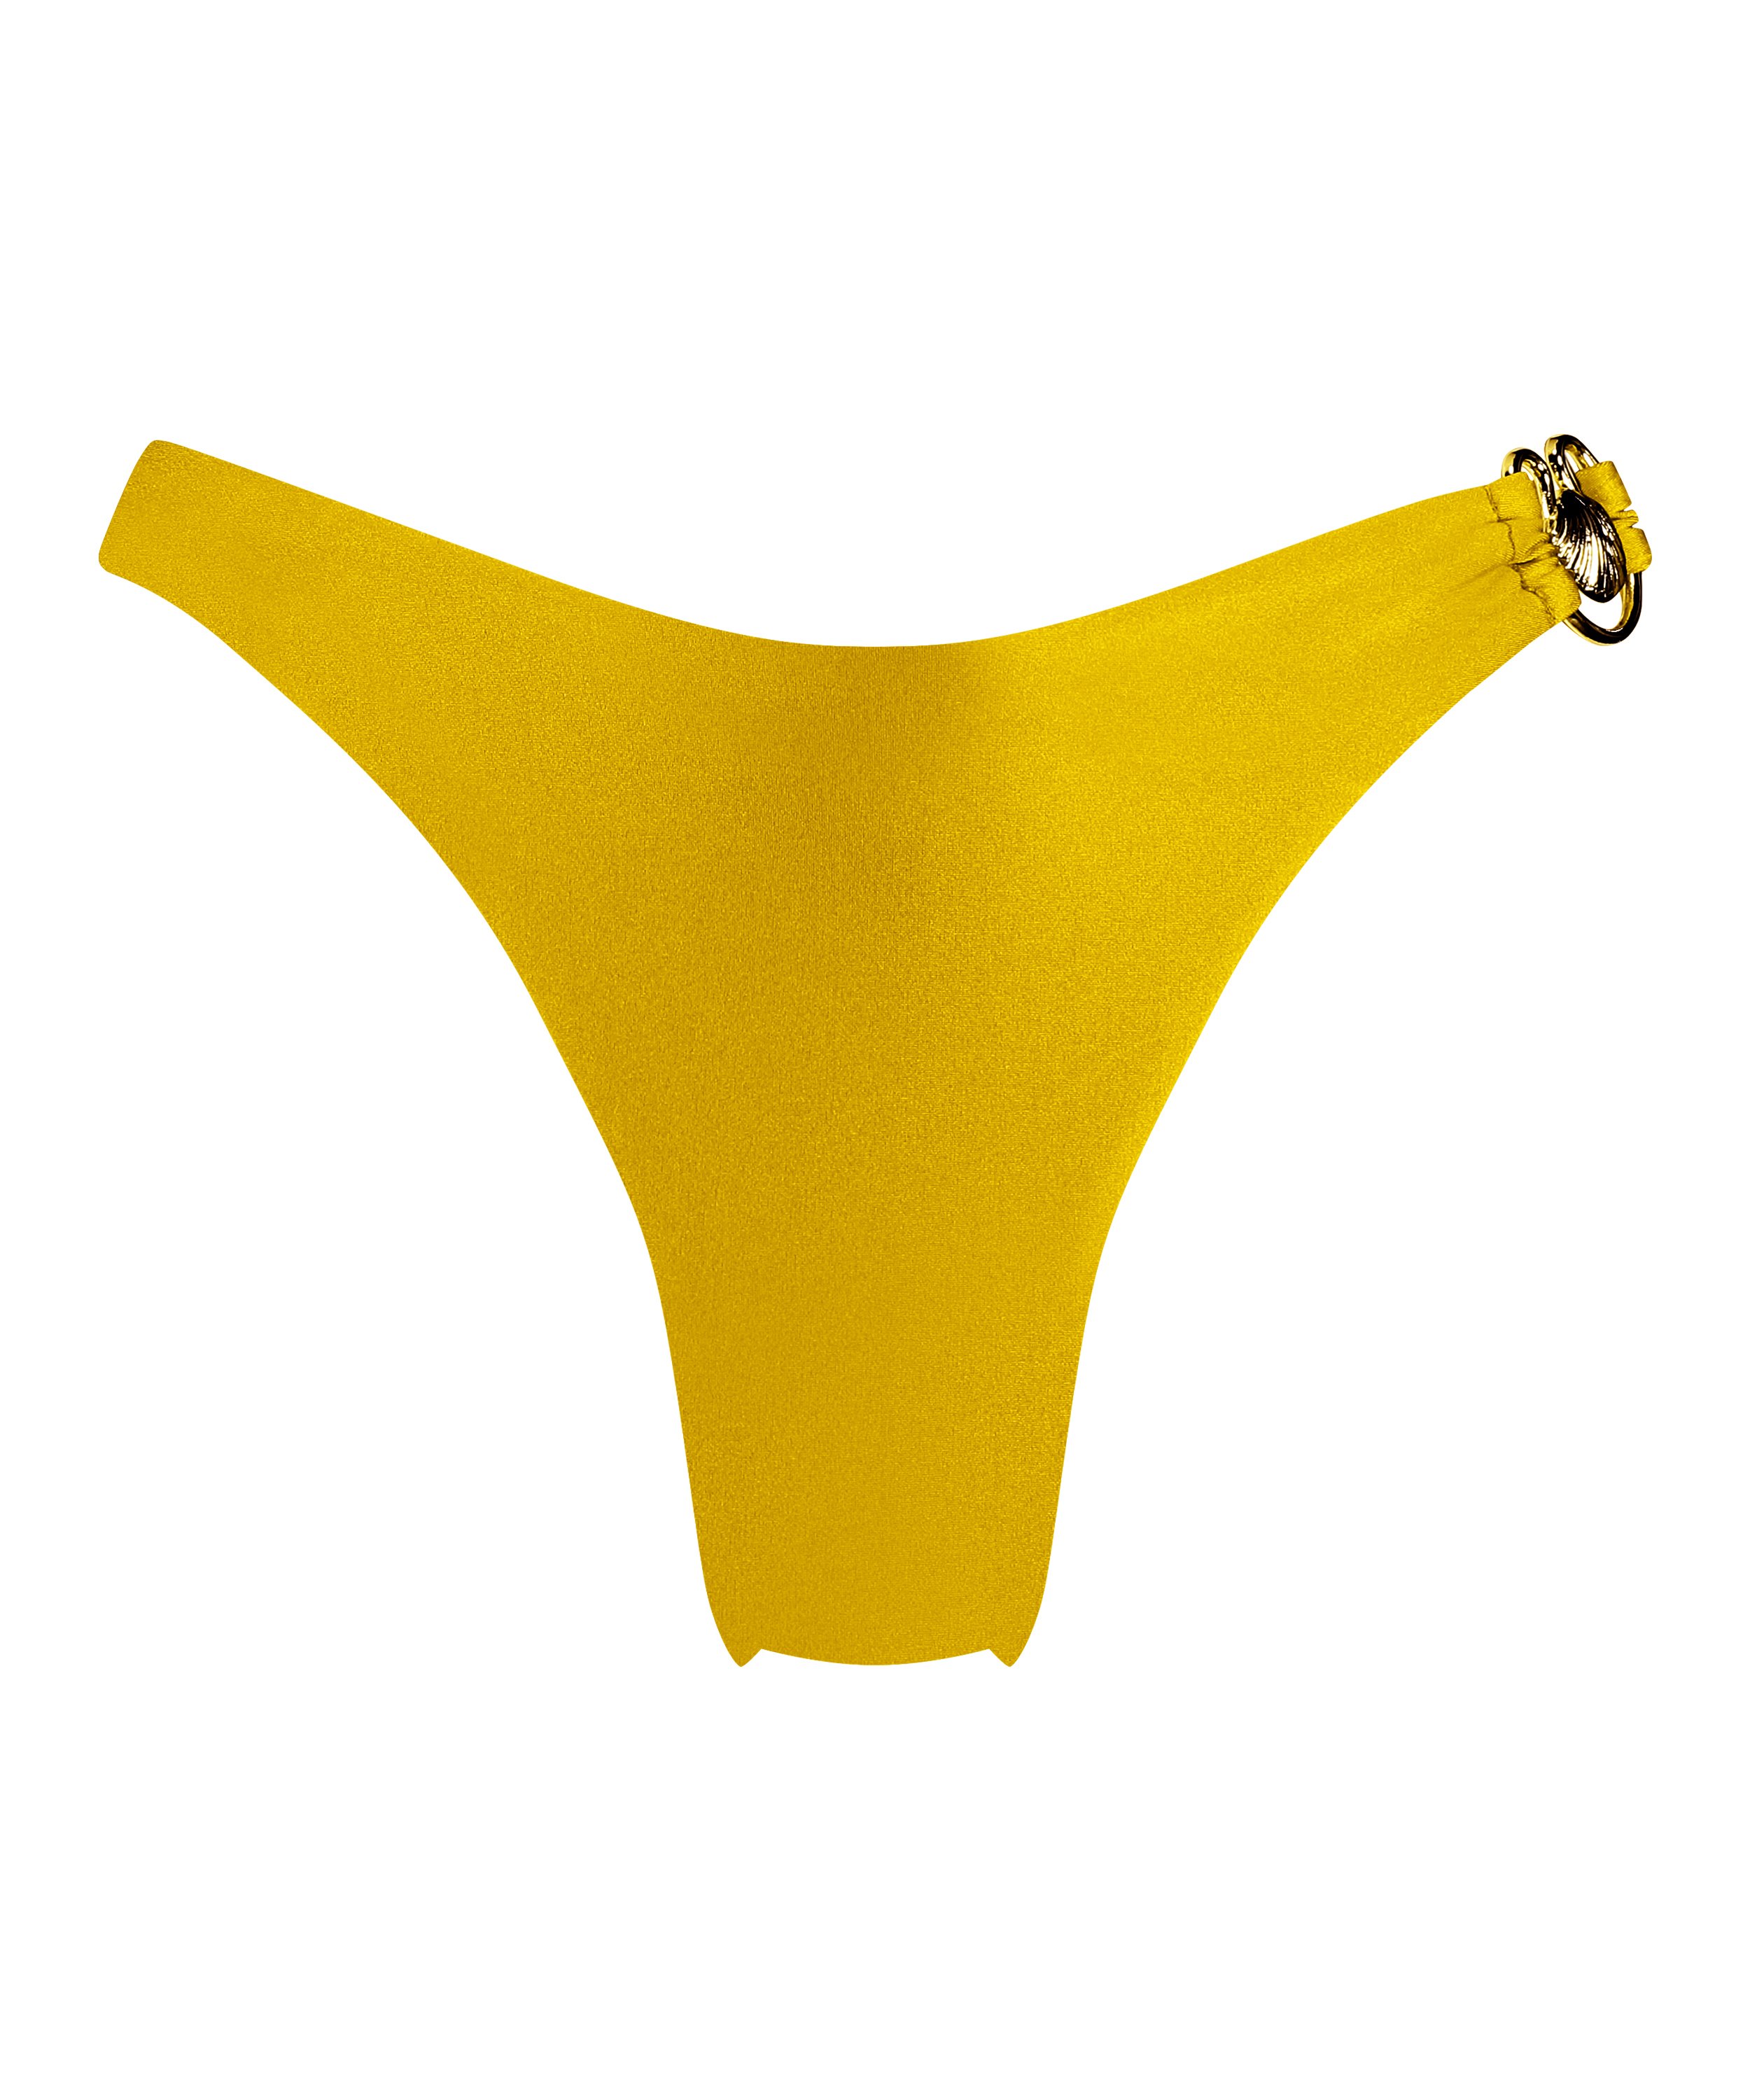 Majtki Bikini Wysoko Krojona Nice, Żółty, main